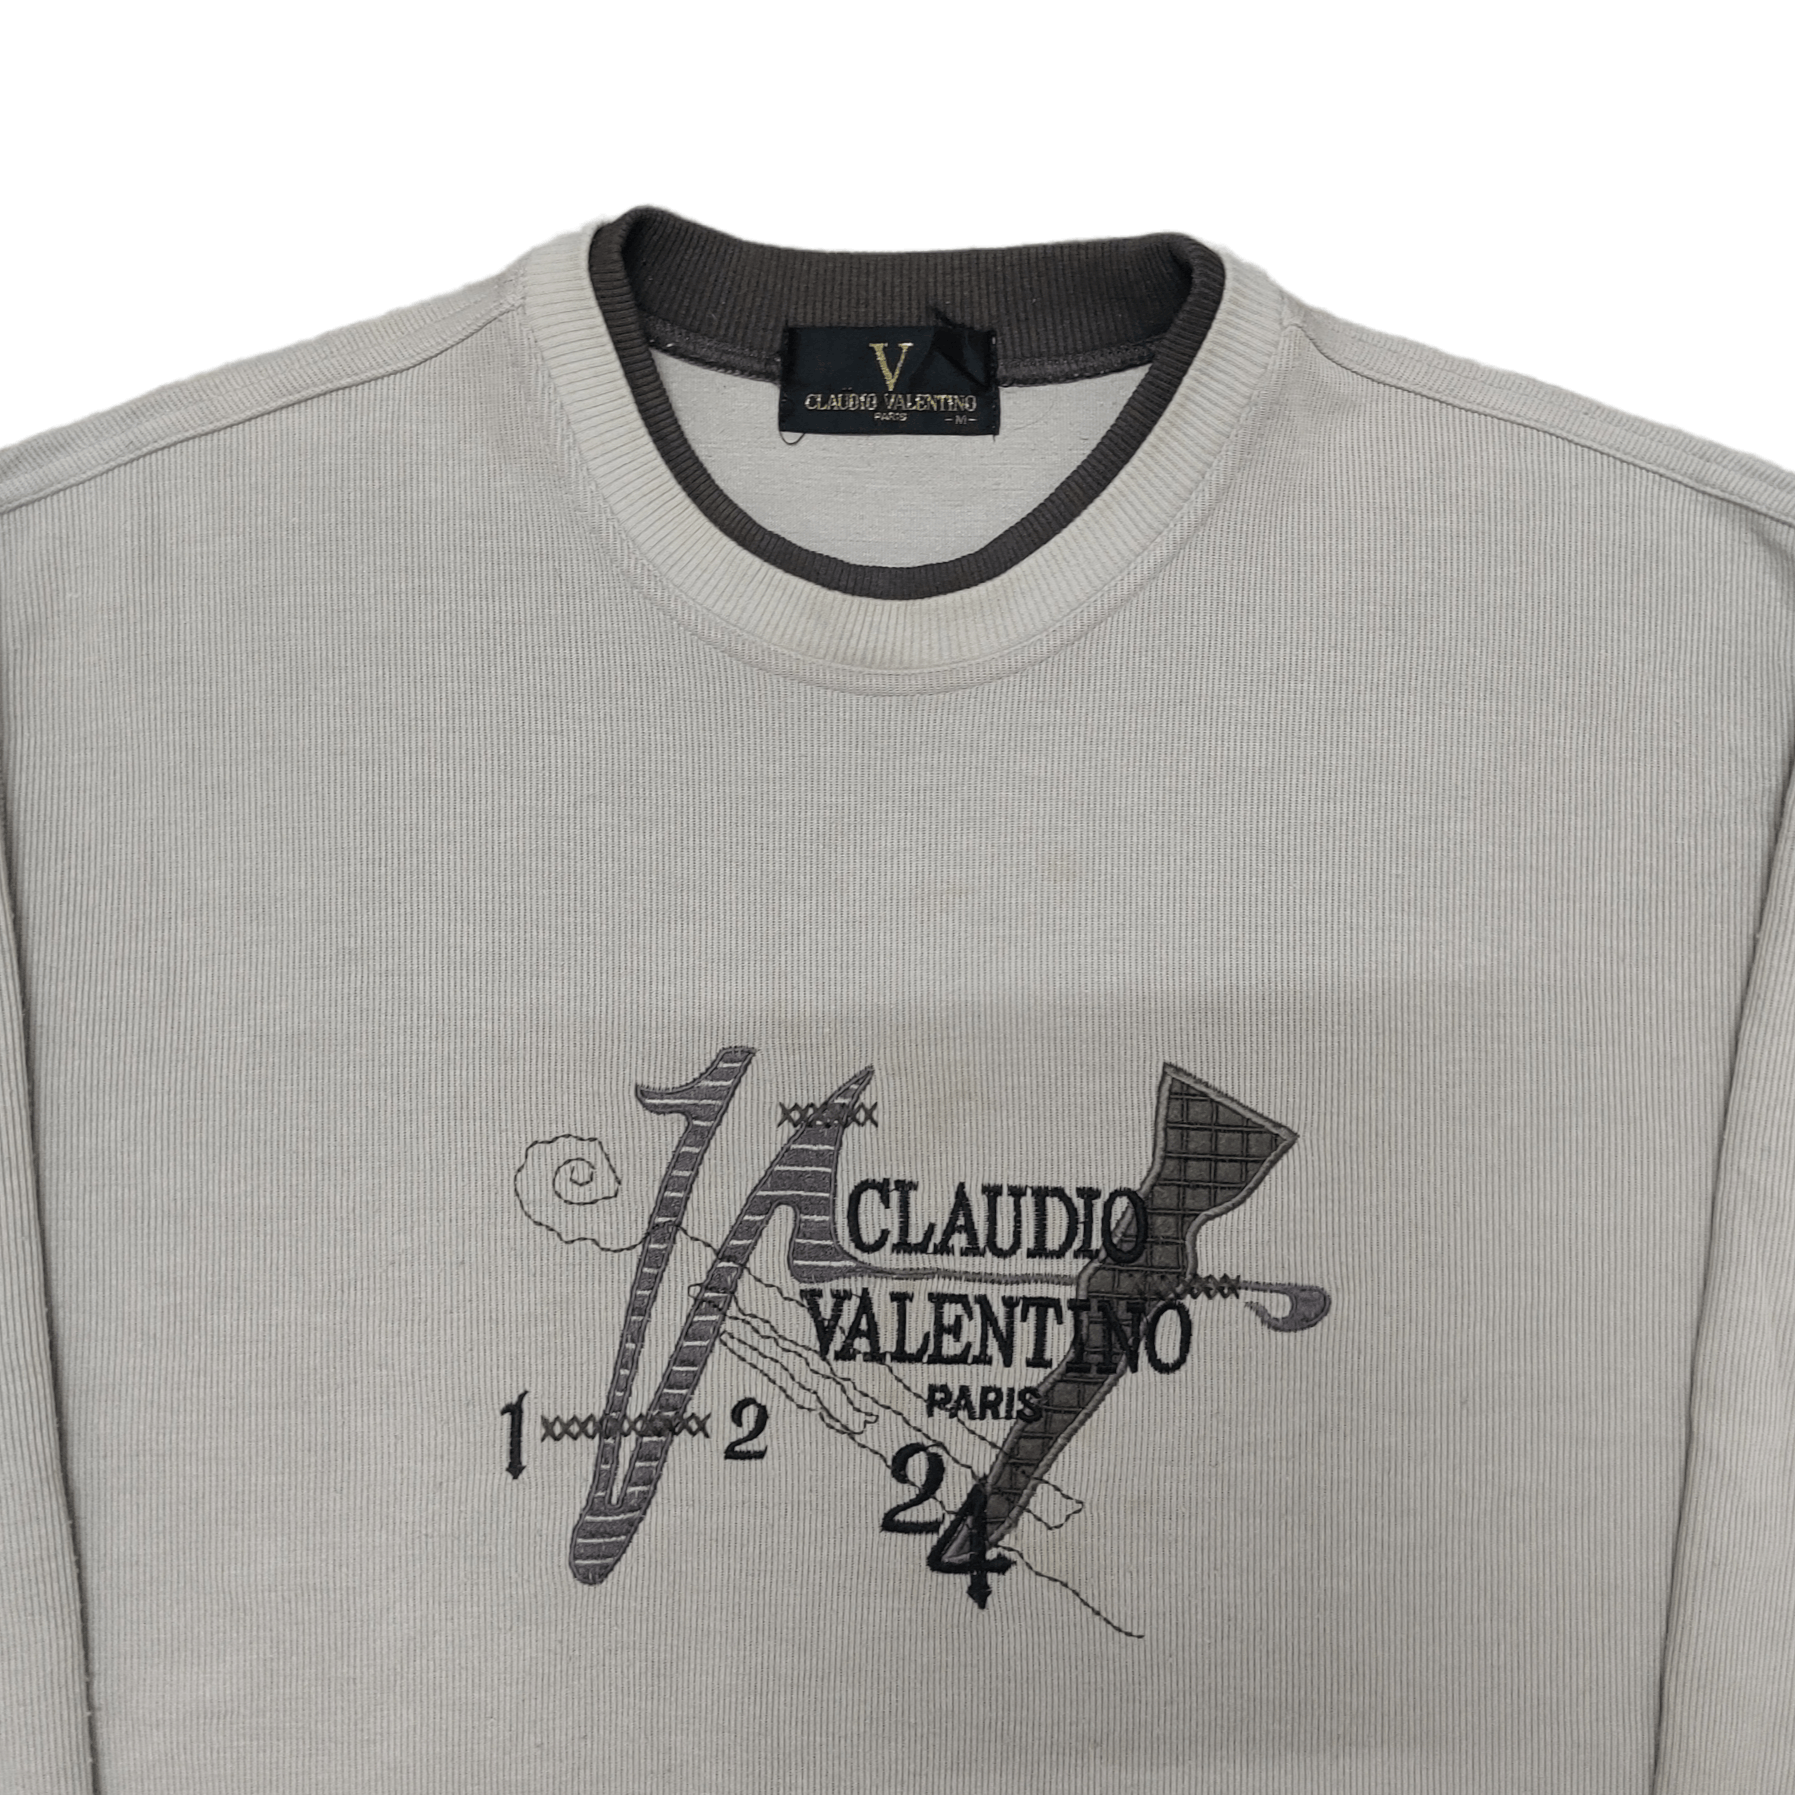 Vintage Caludio Valentino Paris Sweatshirt Embroidery Logo - 2